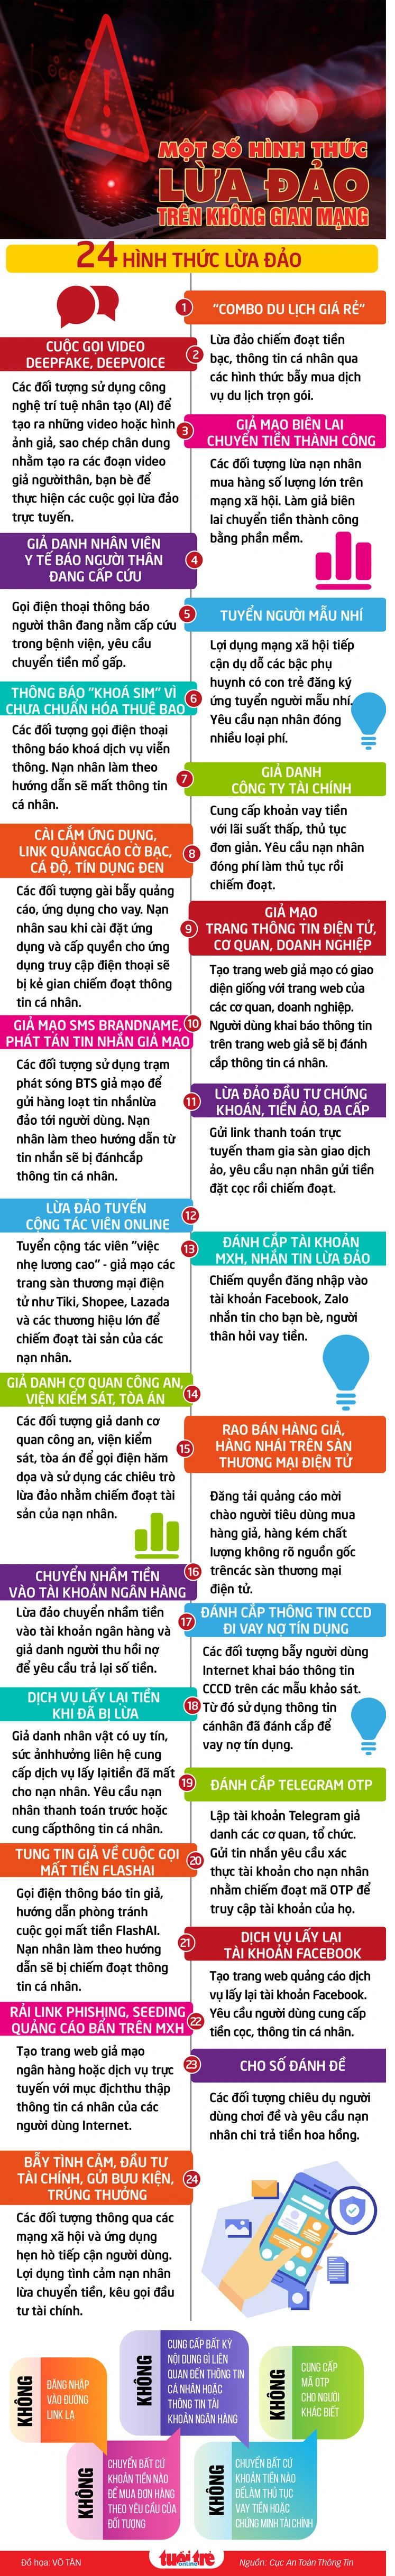 Nhận diện 24 hình thức lừa đảo trên không gian mạng Việt Nam - Ảnh 2.